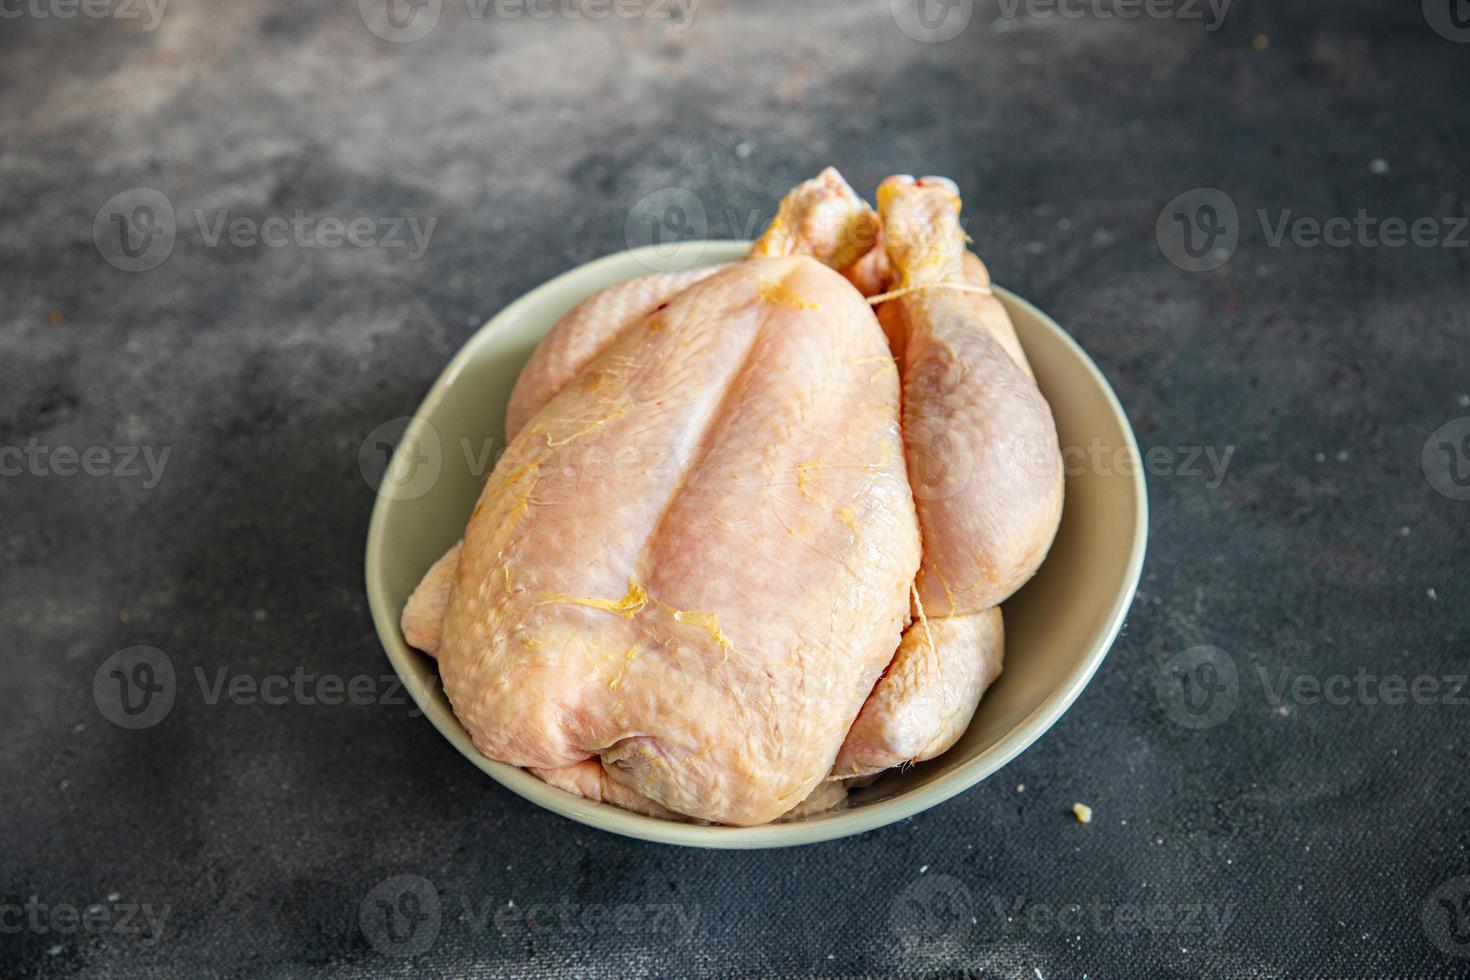 viande de poulet crue volaille entière poulet à griller frais sain repas nourriture collation régime sur la table copie espace photo